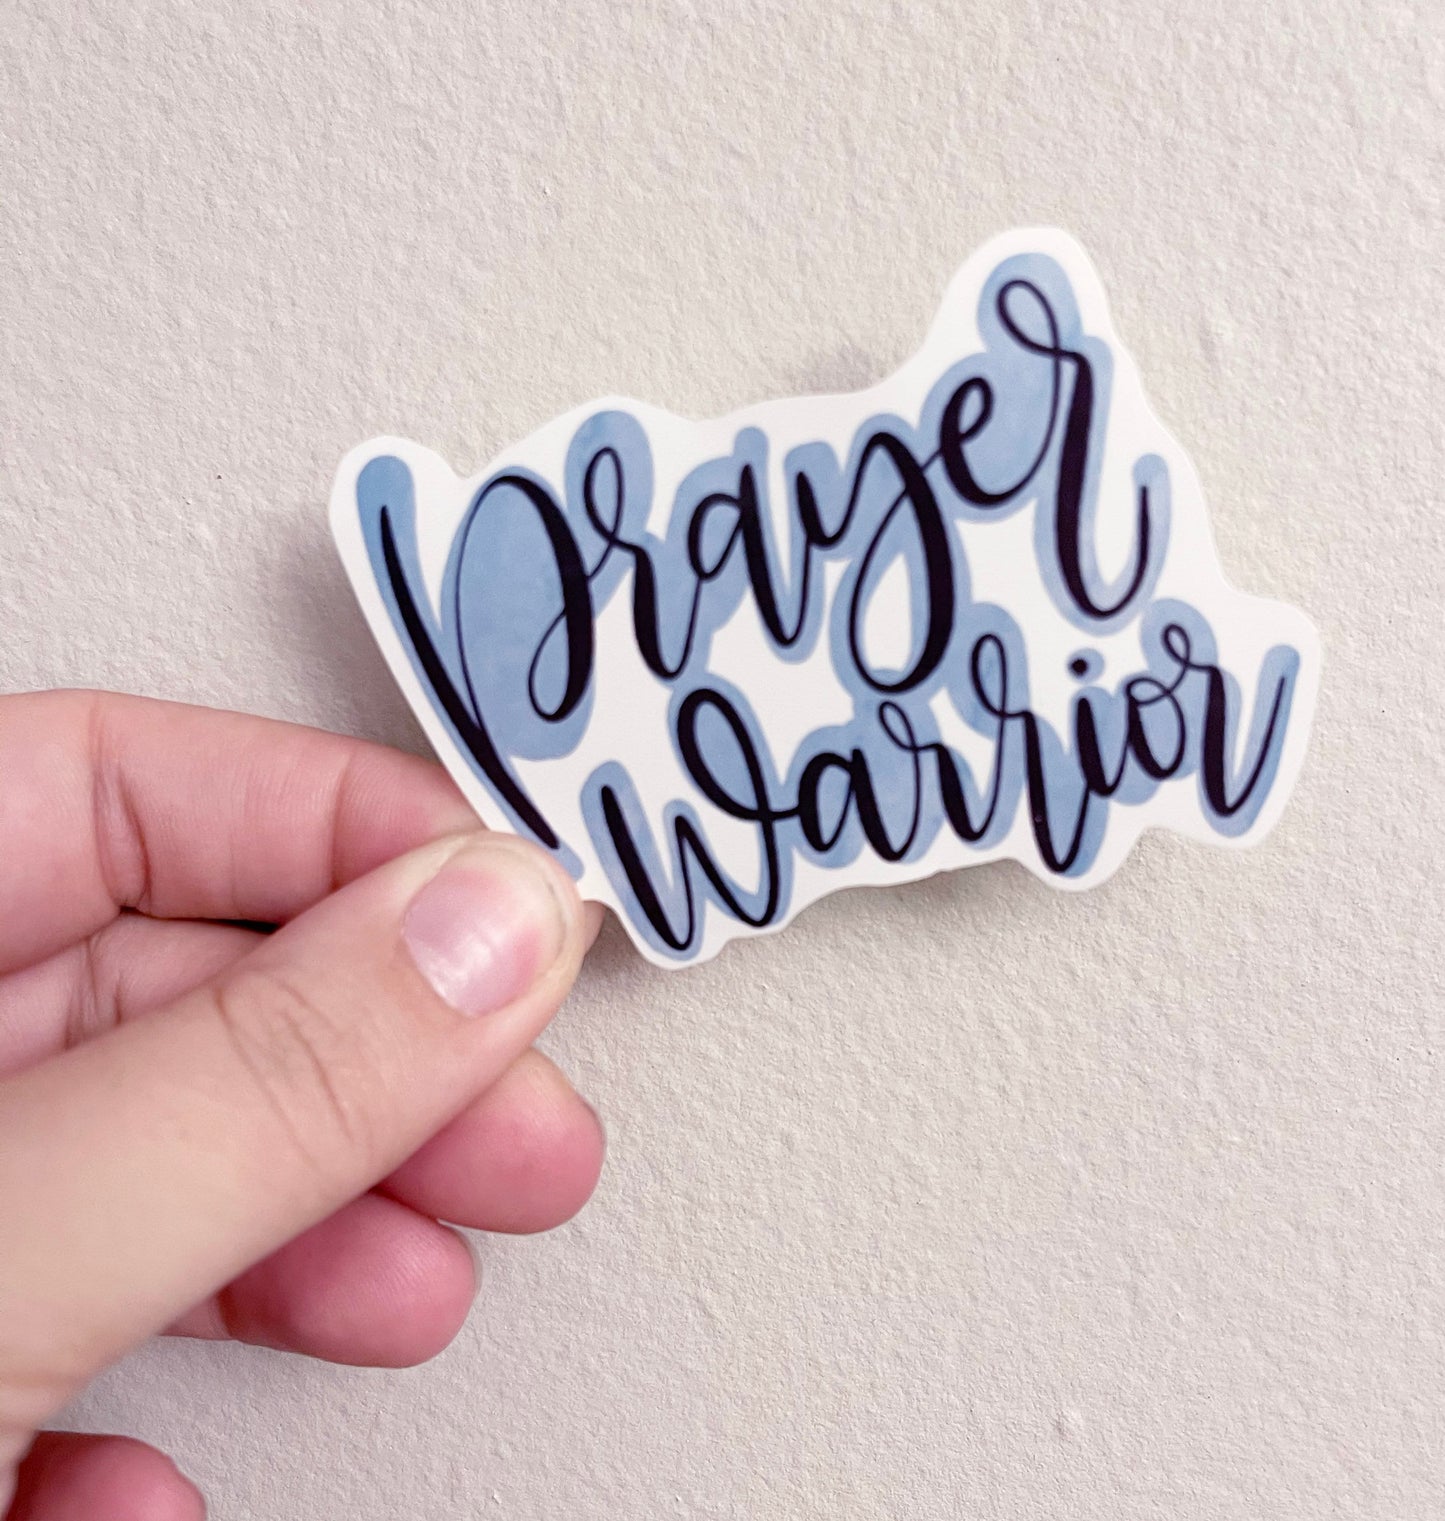 Prayer Warrior Sticker, Vinyl Sticker Decal, Prayer Sticker, Gift